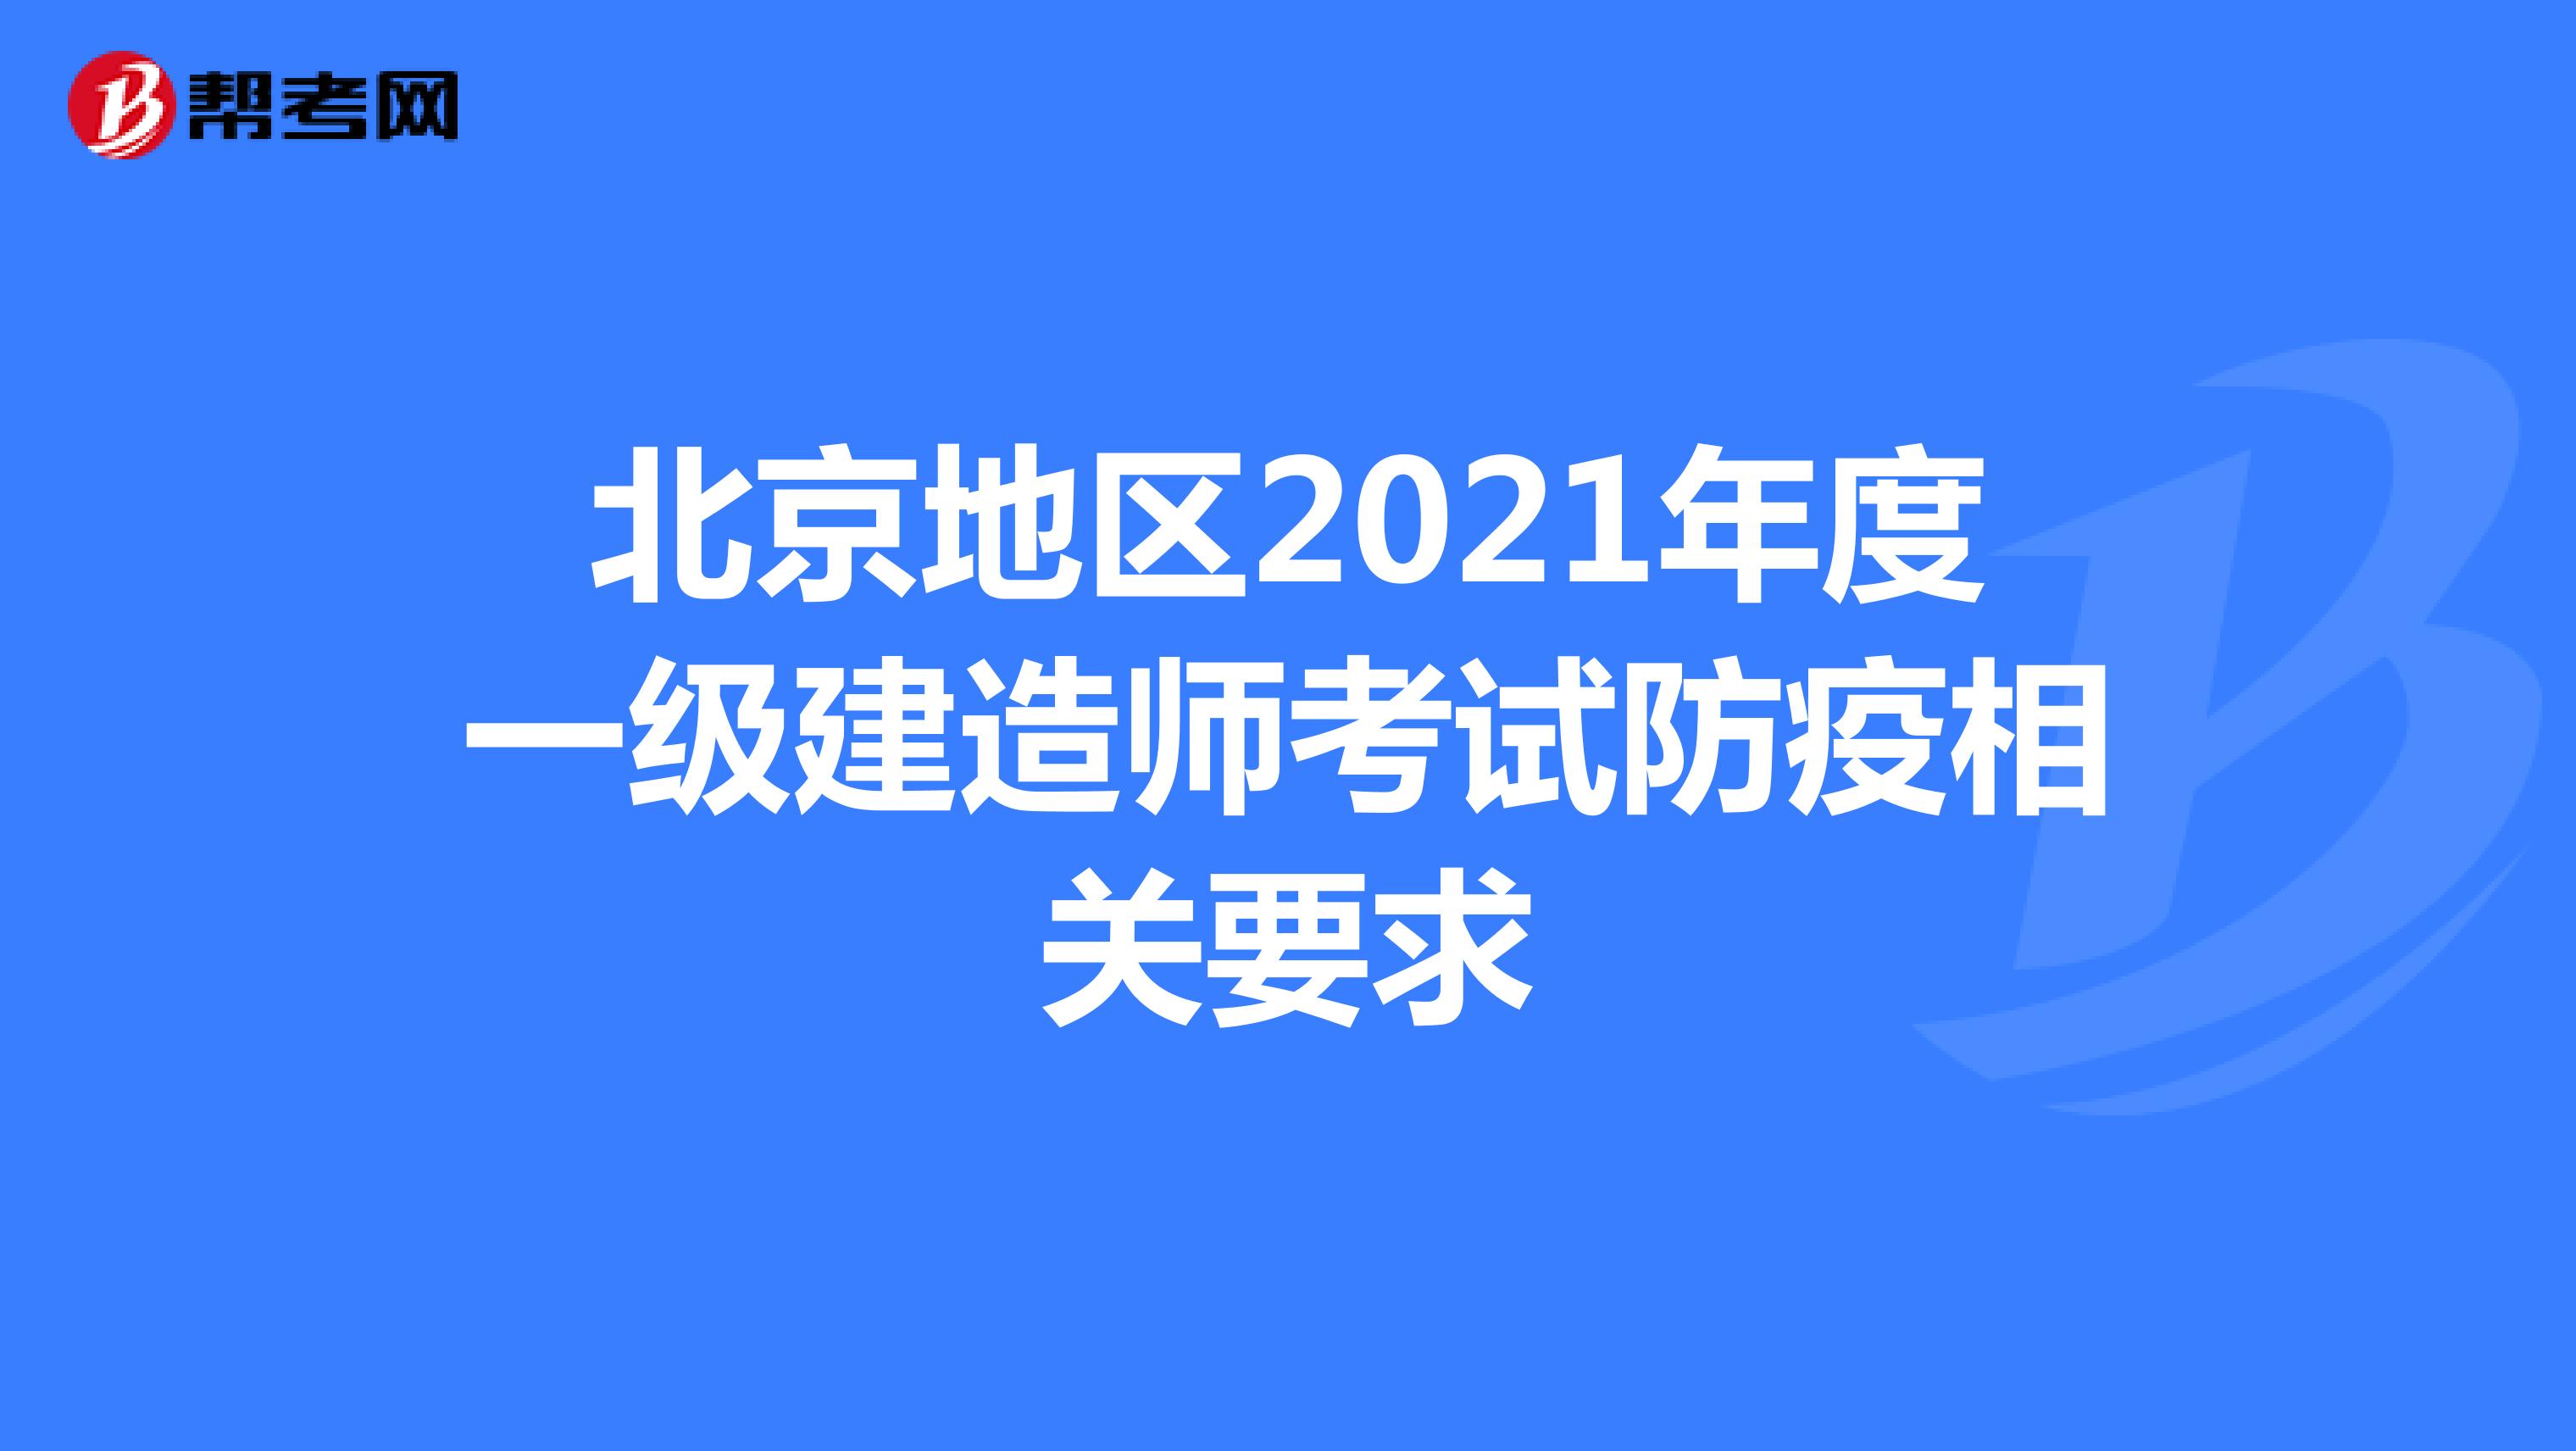 北京地区2021年度一级建造师考试防疫相关要求